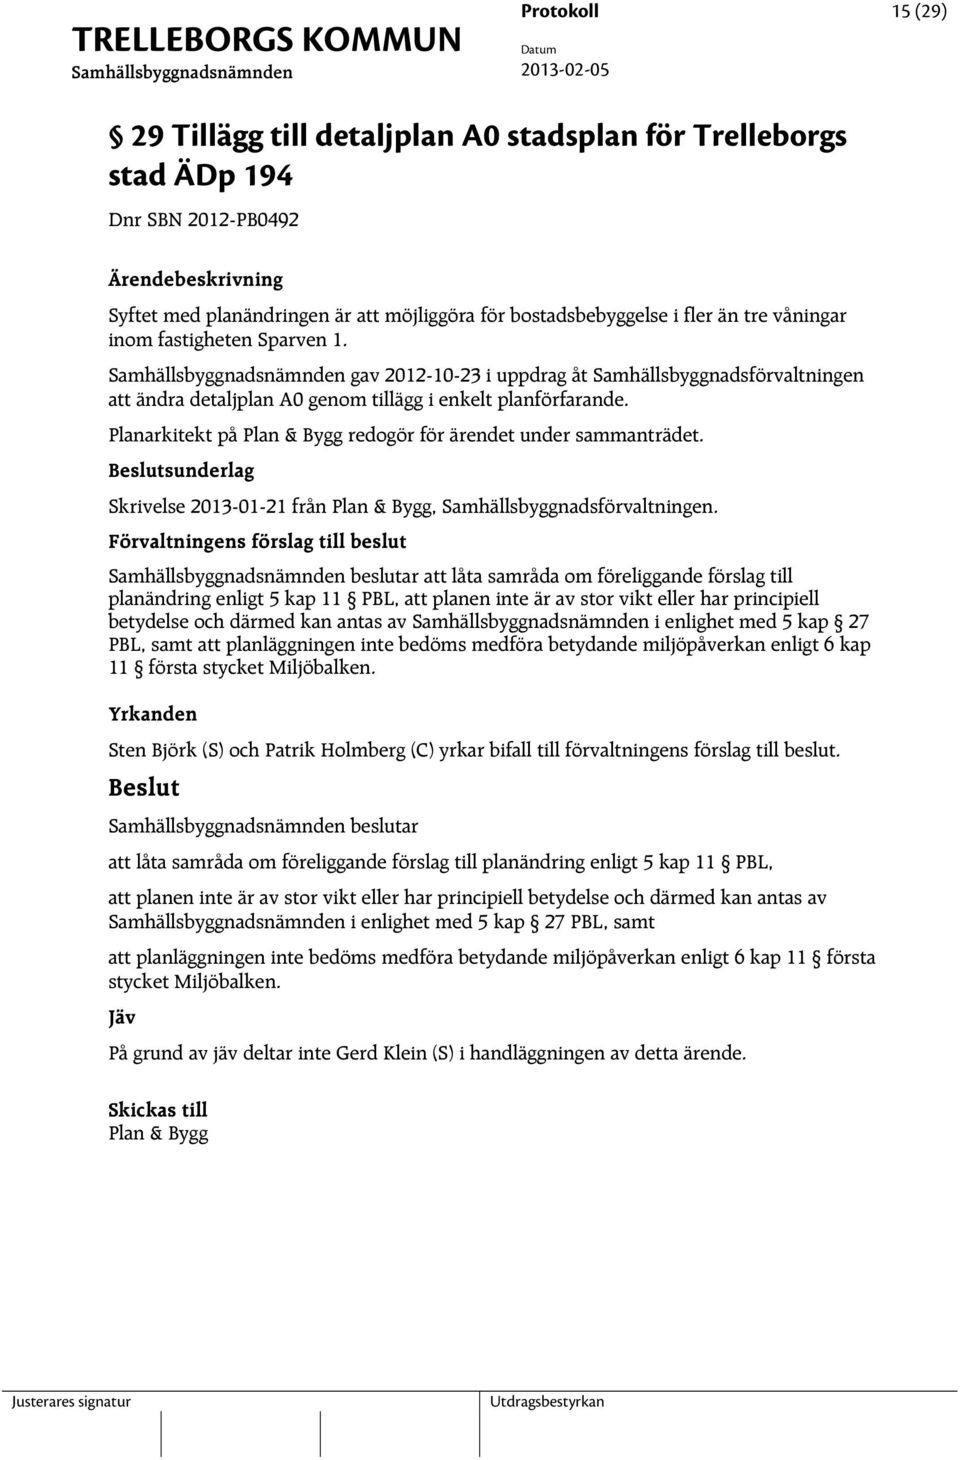 Planarkitekt på Plan & Bygg redogör för ärendet under sammanträdet. sunderlag Skrivelse 2013-01-21 från Plan & Bygg, Samhällsbyggnadsförvaltningen.